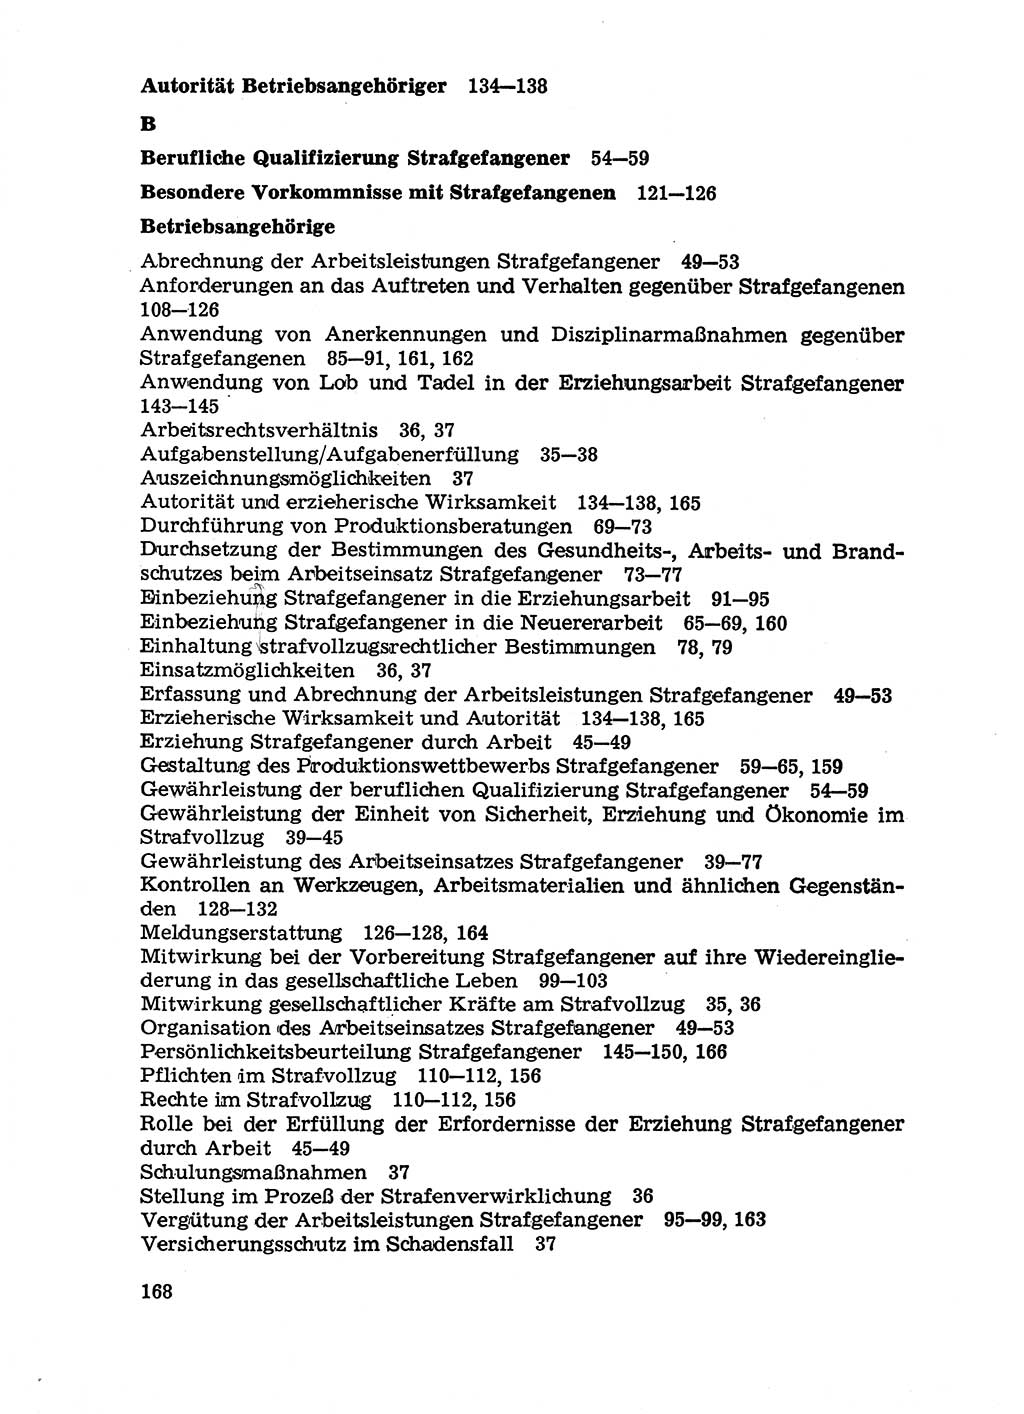 Handbuch für Betriebsangehörige, Abteilung Strafvollzug (SV) [Ministerium des Innern (MdI) Deutsche Demokratische Republik (DDR)] 1981, Seite 168 (Hb. BA Abt. SV MdI DDR 1981, S. 168)